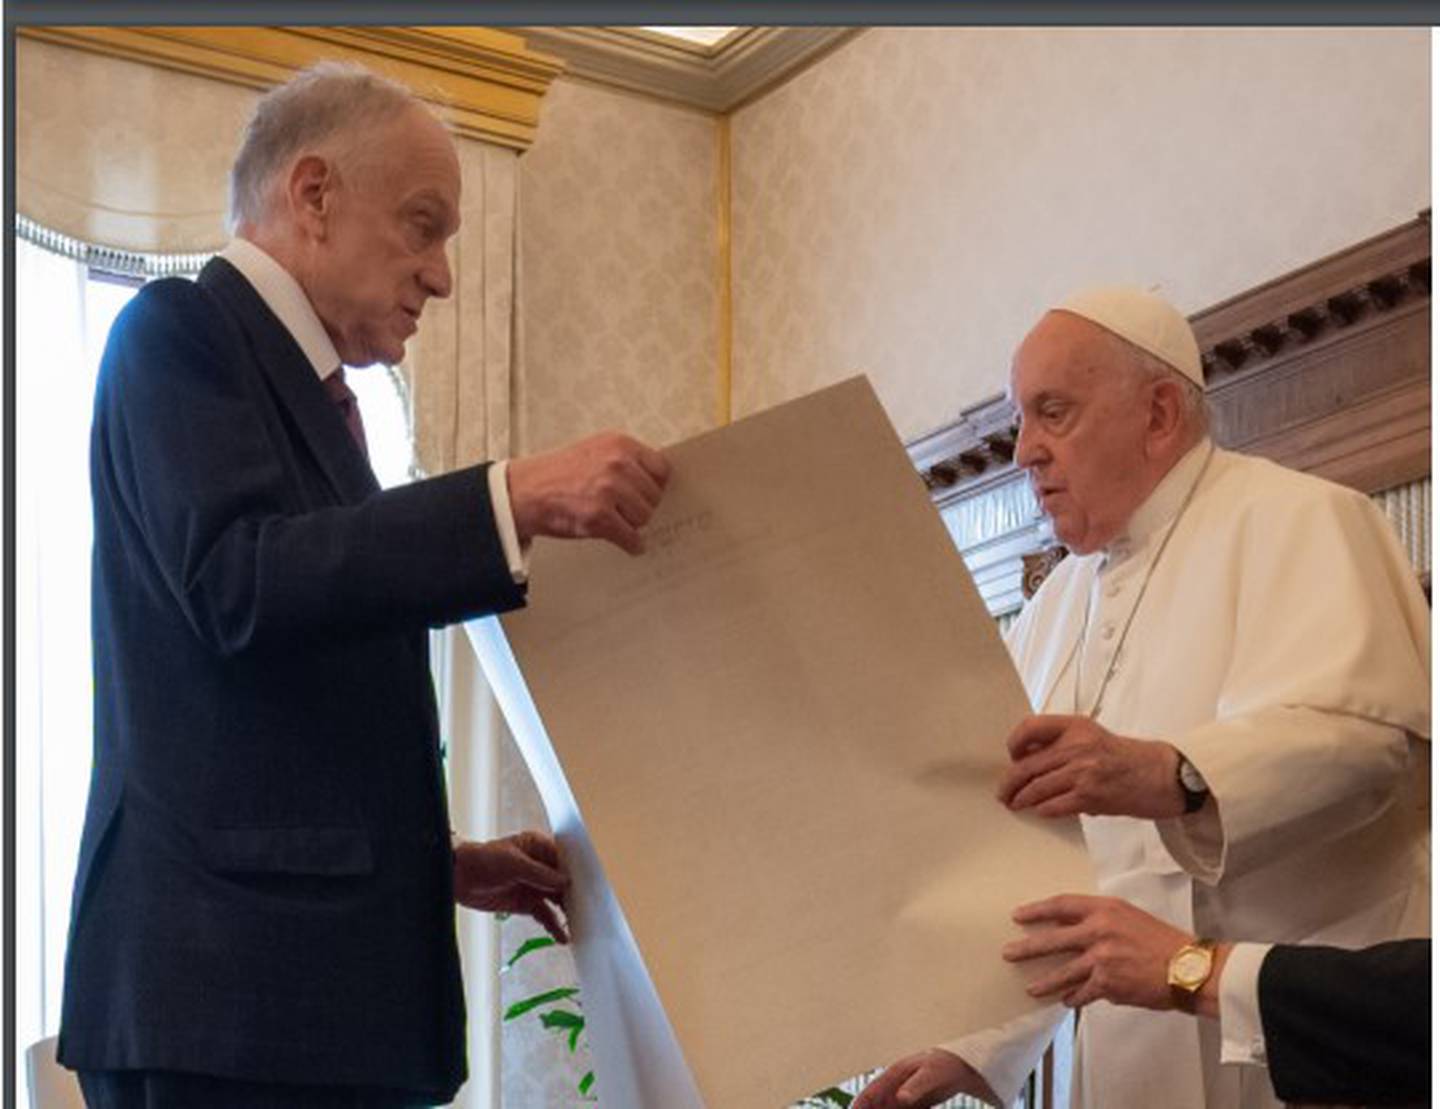 El presidente del Congreso Judío Mundial, Ronald Lauder, presenta al papa
Francisco el documento "Kishreinu", hoja de ruta para el futuro de las relaciones
entre judíos y cristianos.